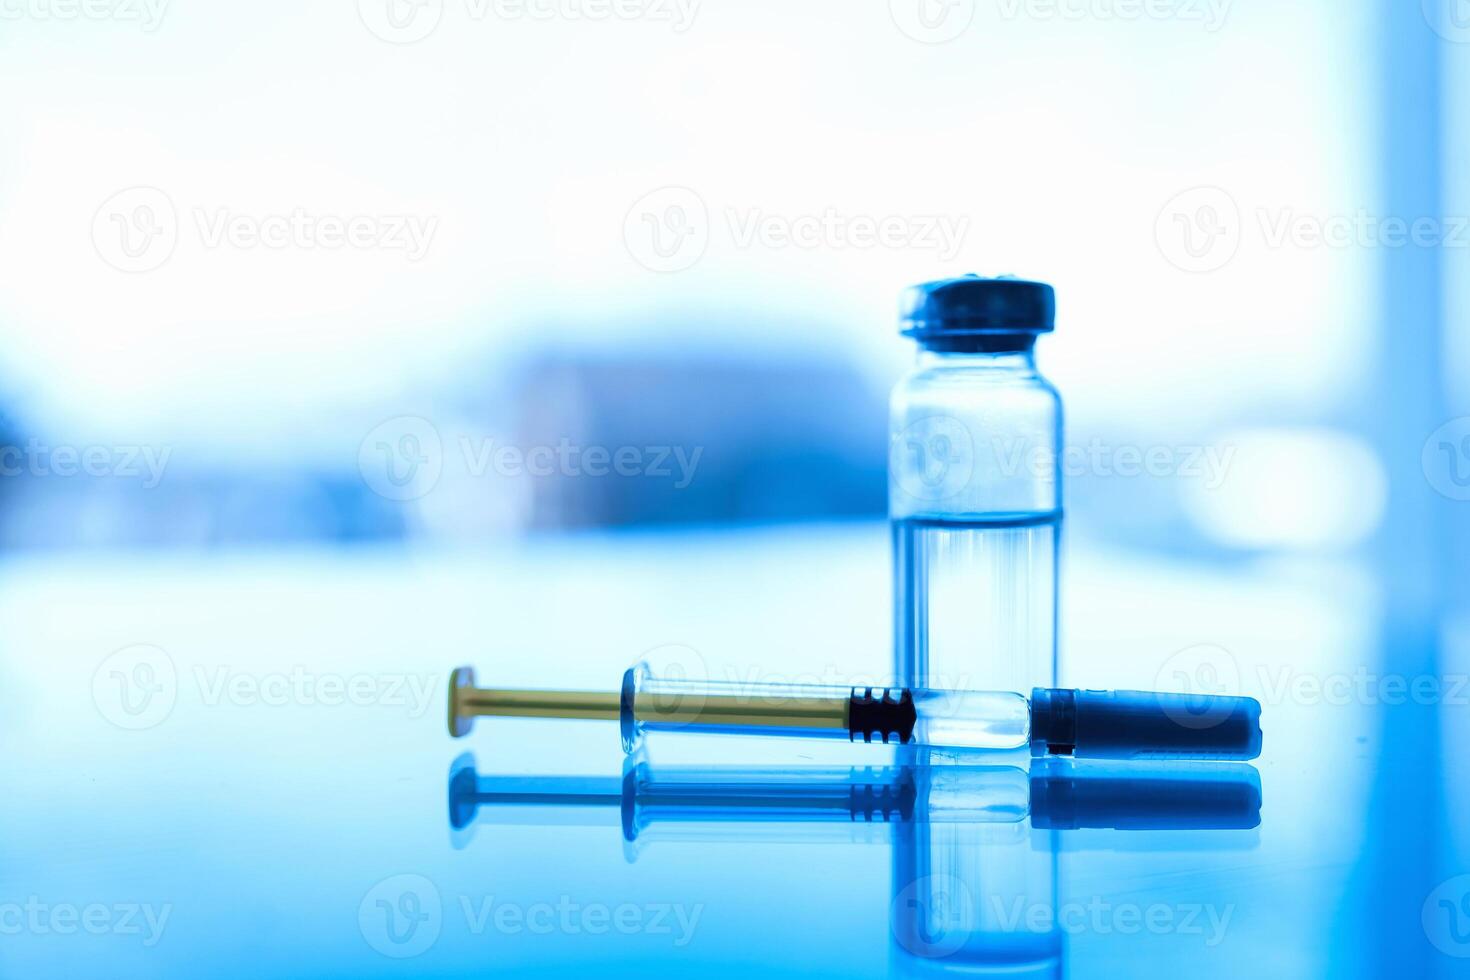 ampuller av medicin och spruta på en blå glas tabell med fönster bakgrund foto